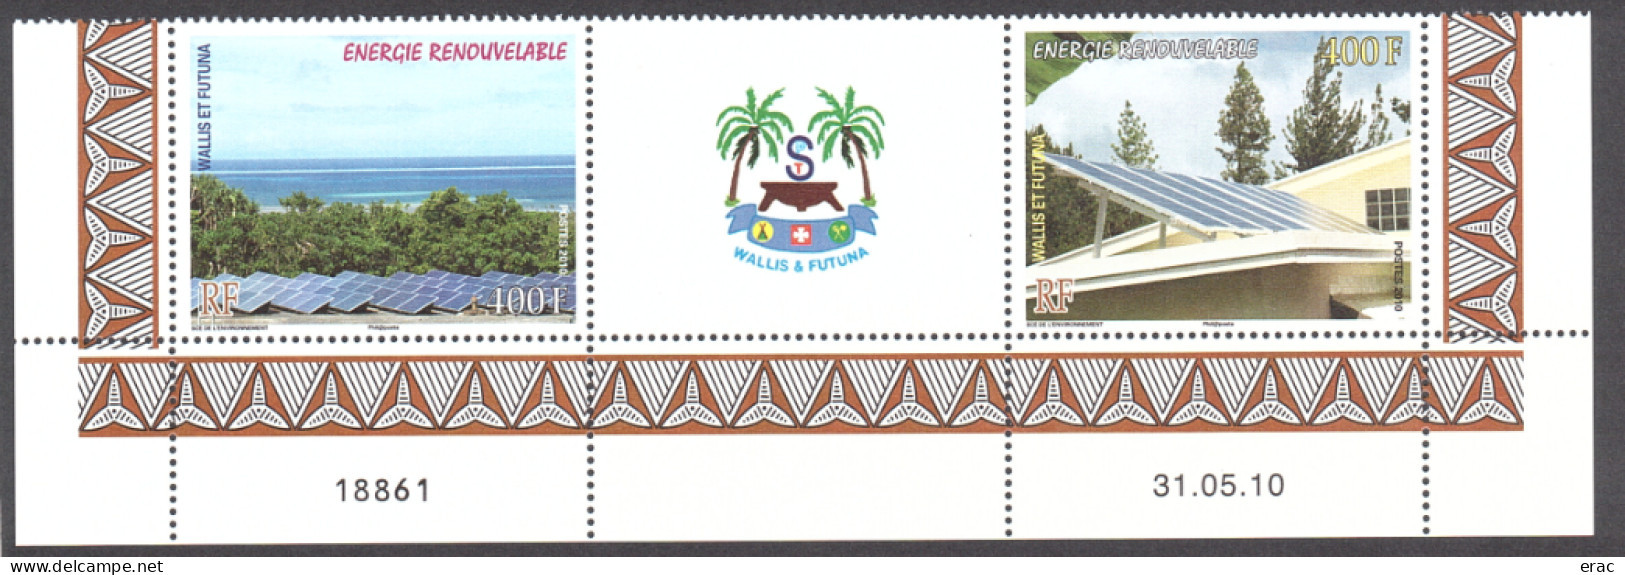 Wallis Et Futuna - 2010 - Bas De Feuille Daté Des N° 737 + 738 + Vignette Centrale - Neuf ** - Energie Renouvelable - Ongebruikt